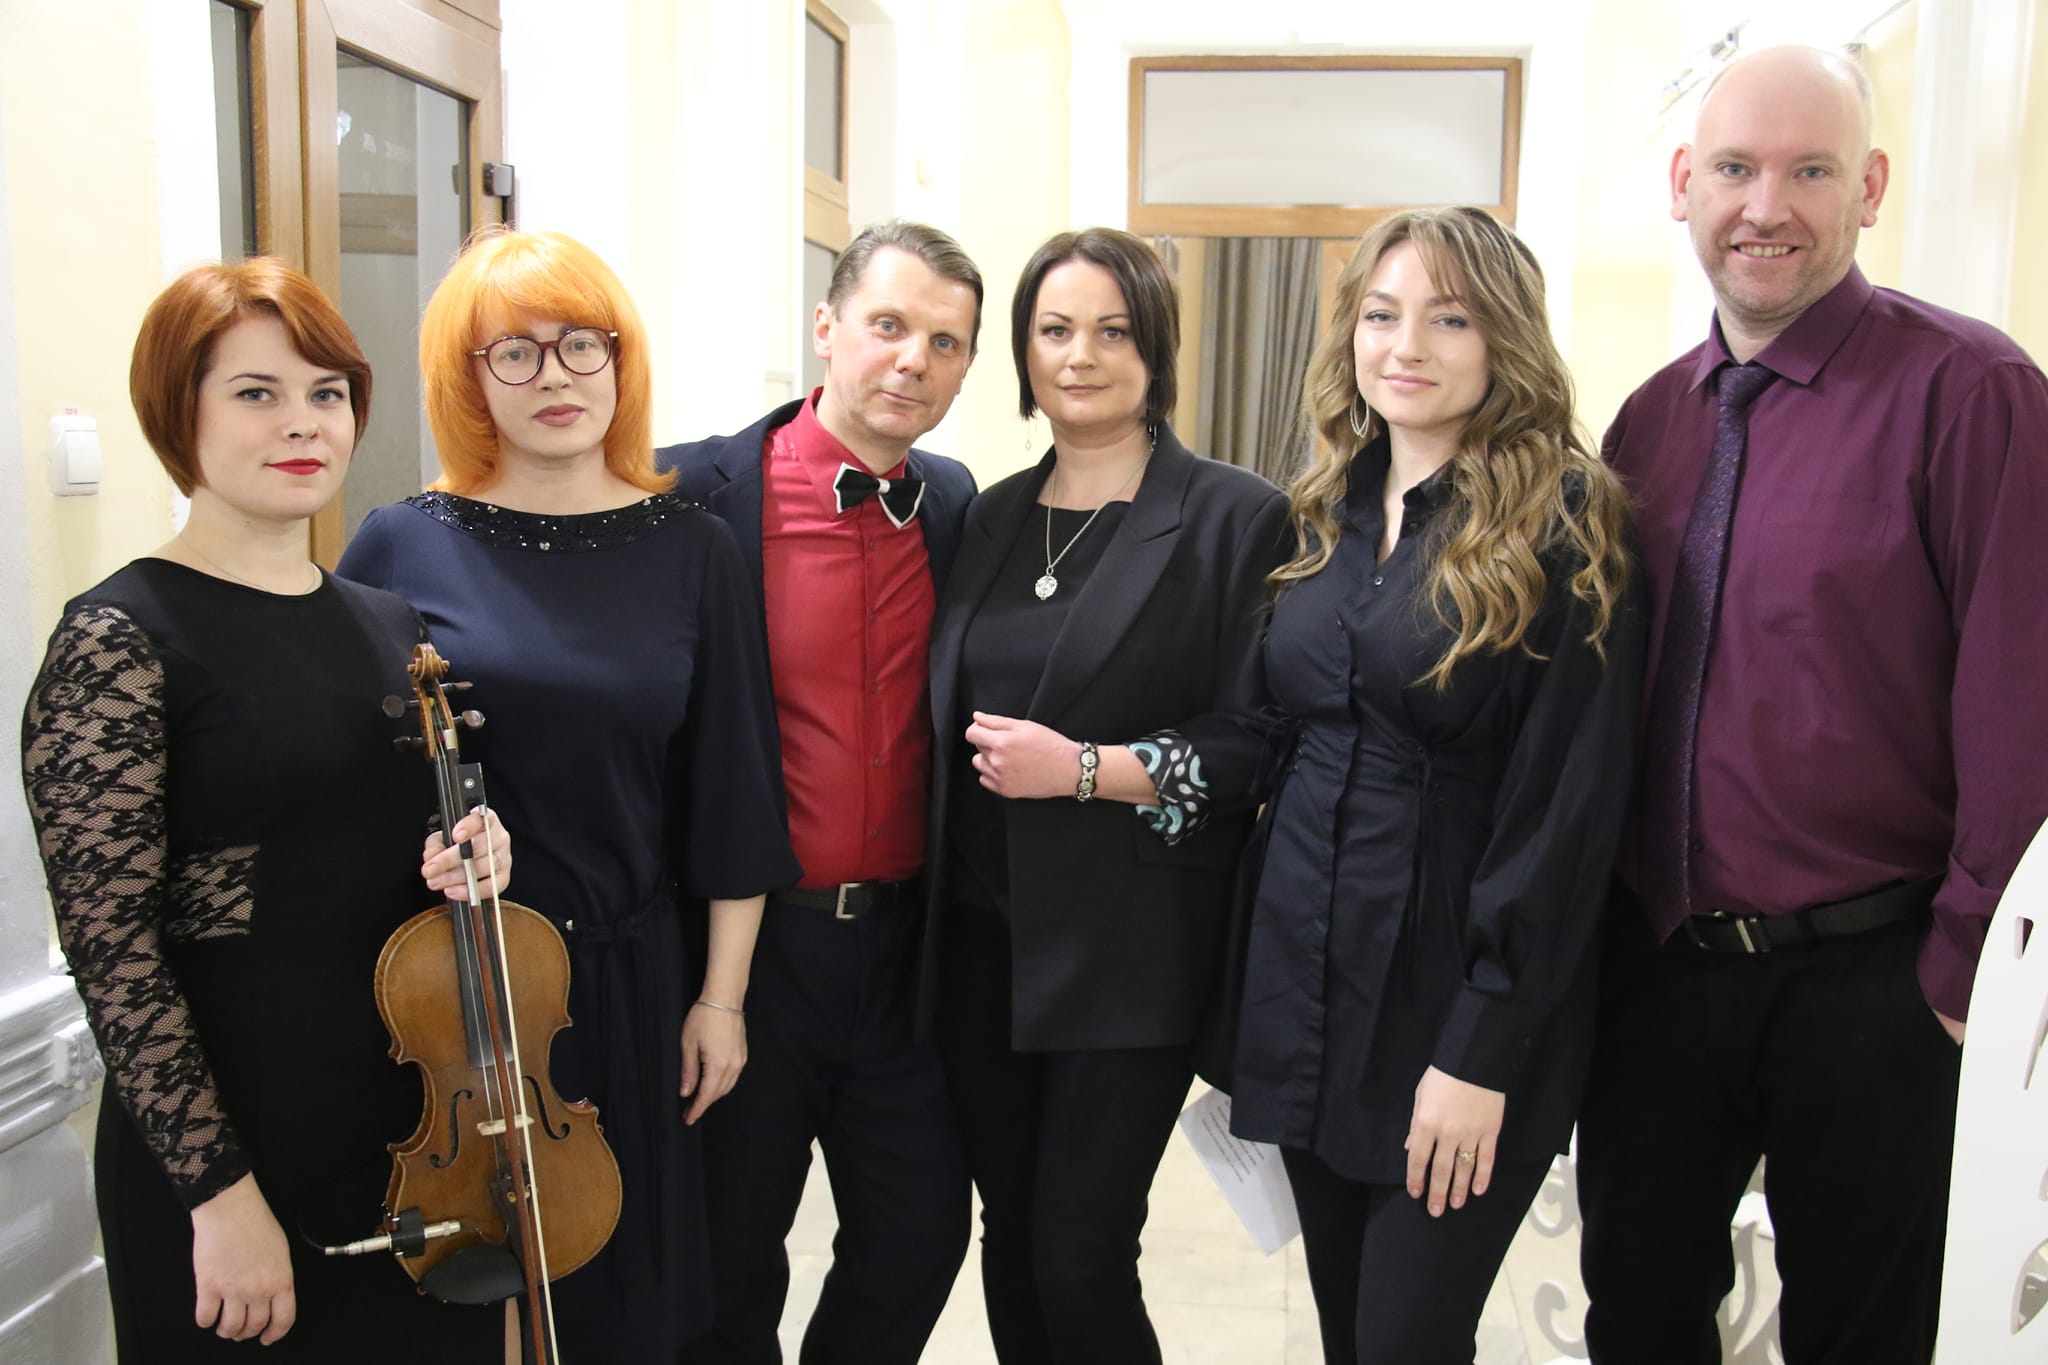 UAКохання — вечір музики та поезії організували у Домі української культури 